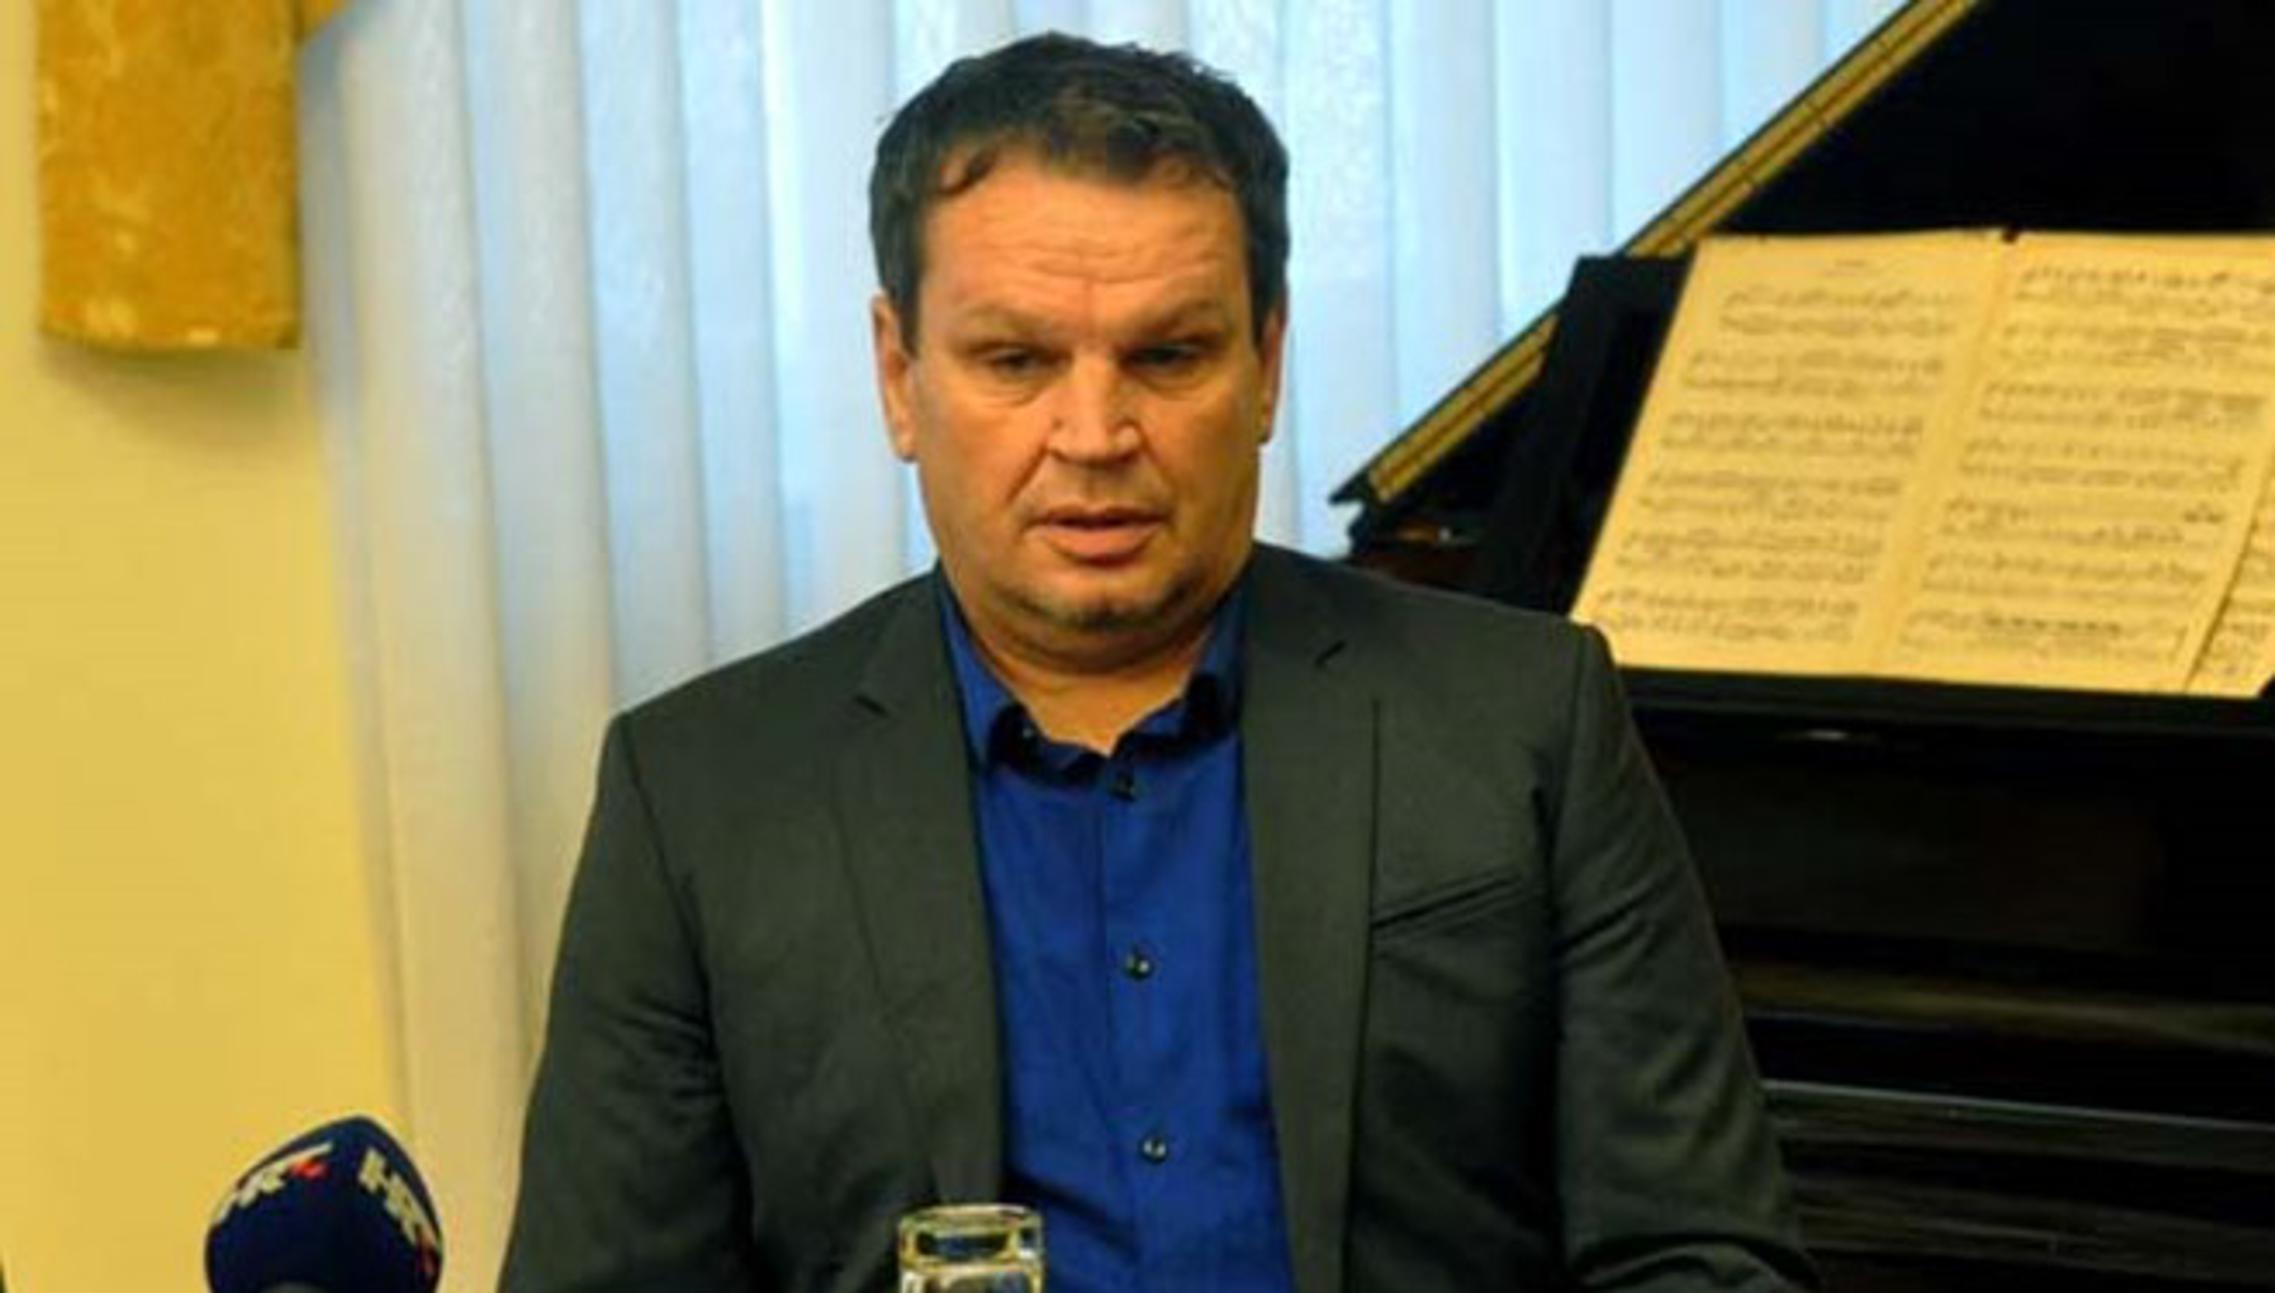 Ante Pavličević